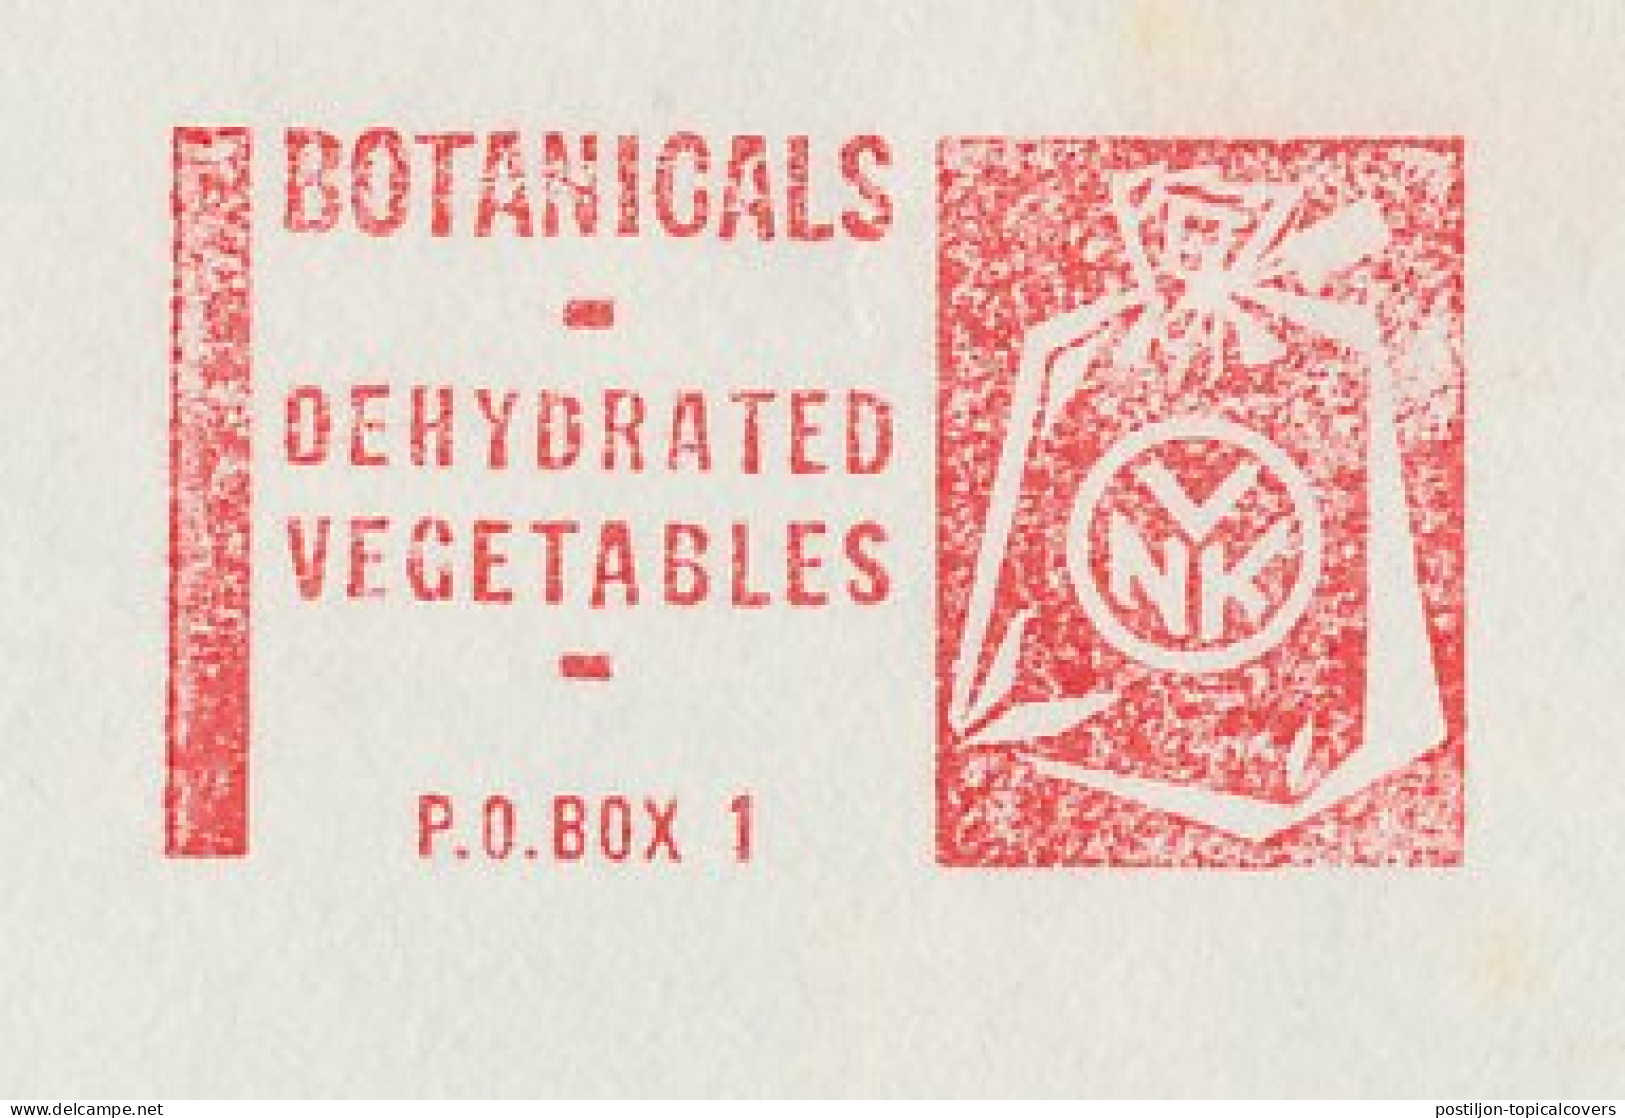 Meter Cover Netherlands 1967 Botanicals - Dehydrated Vegetables - Vegetables